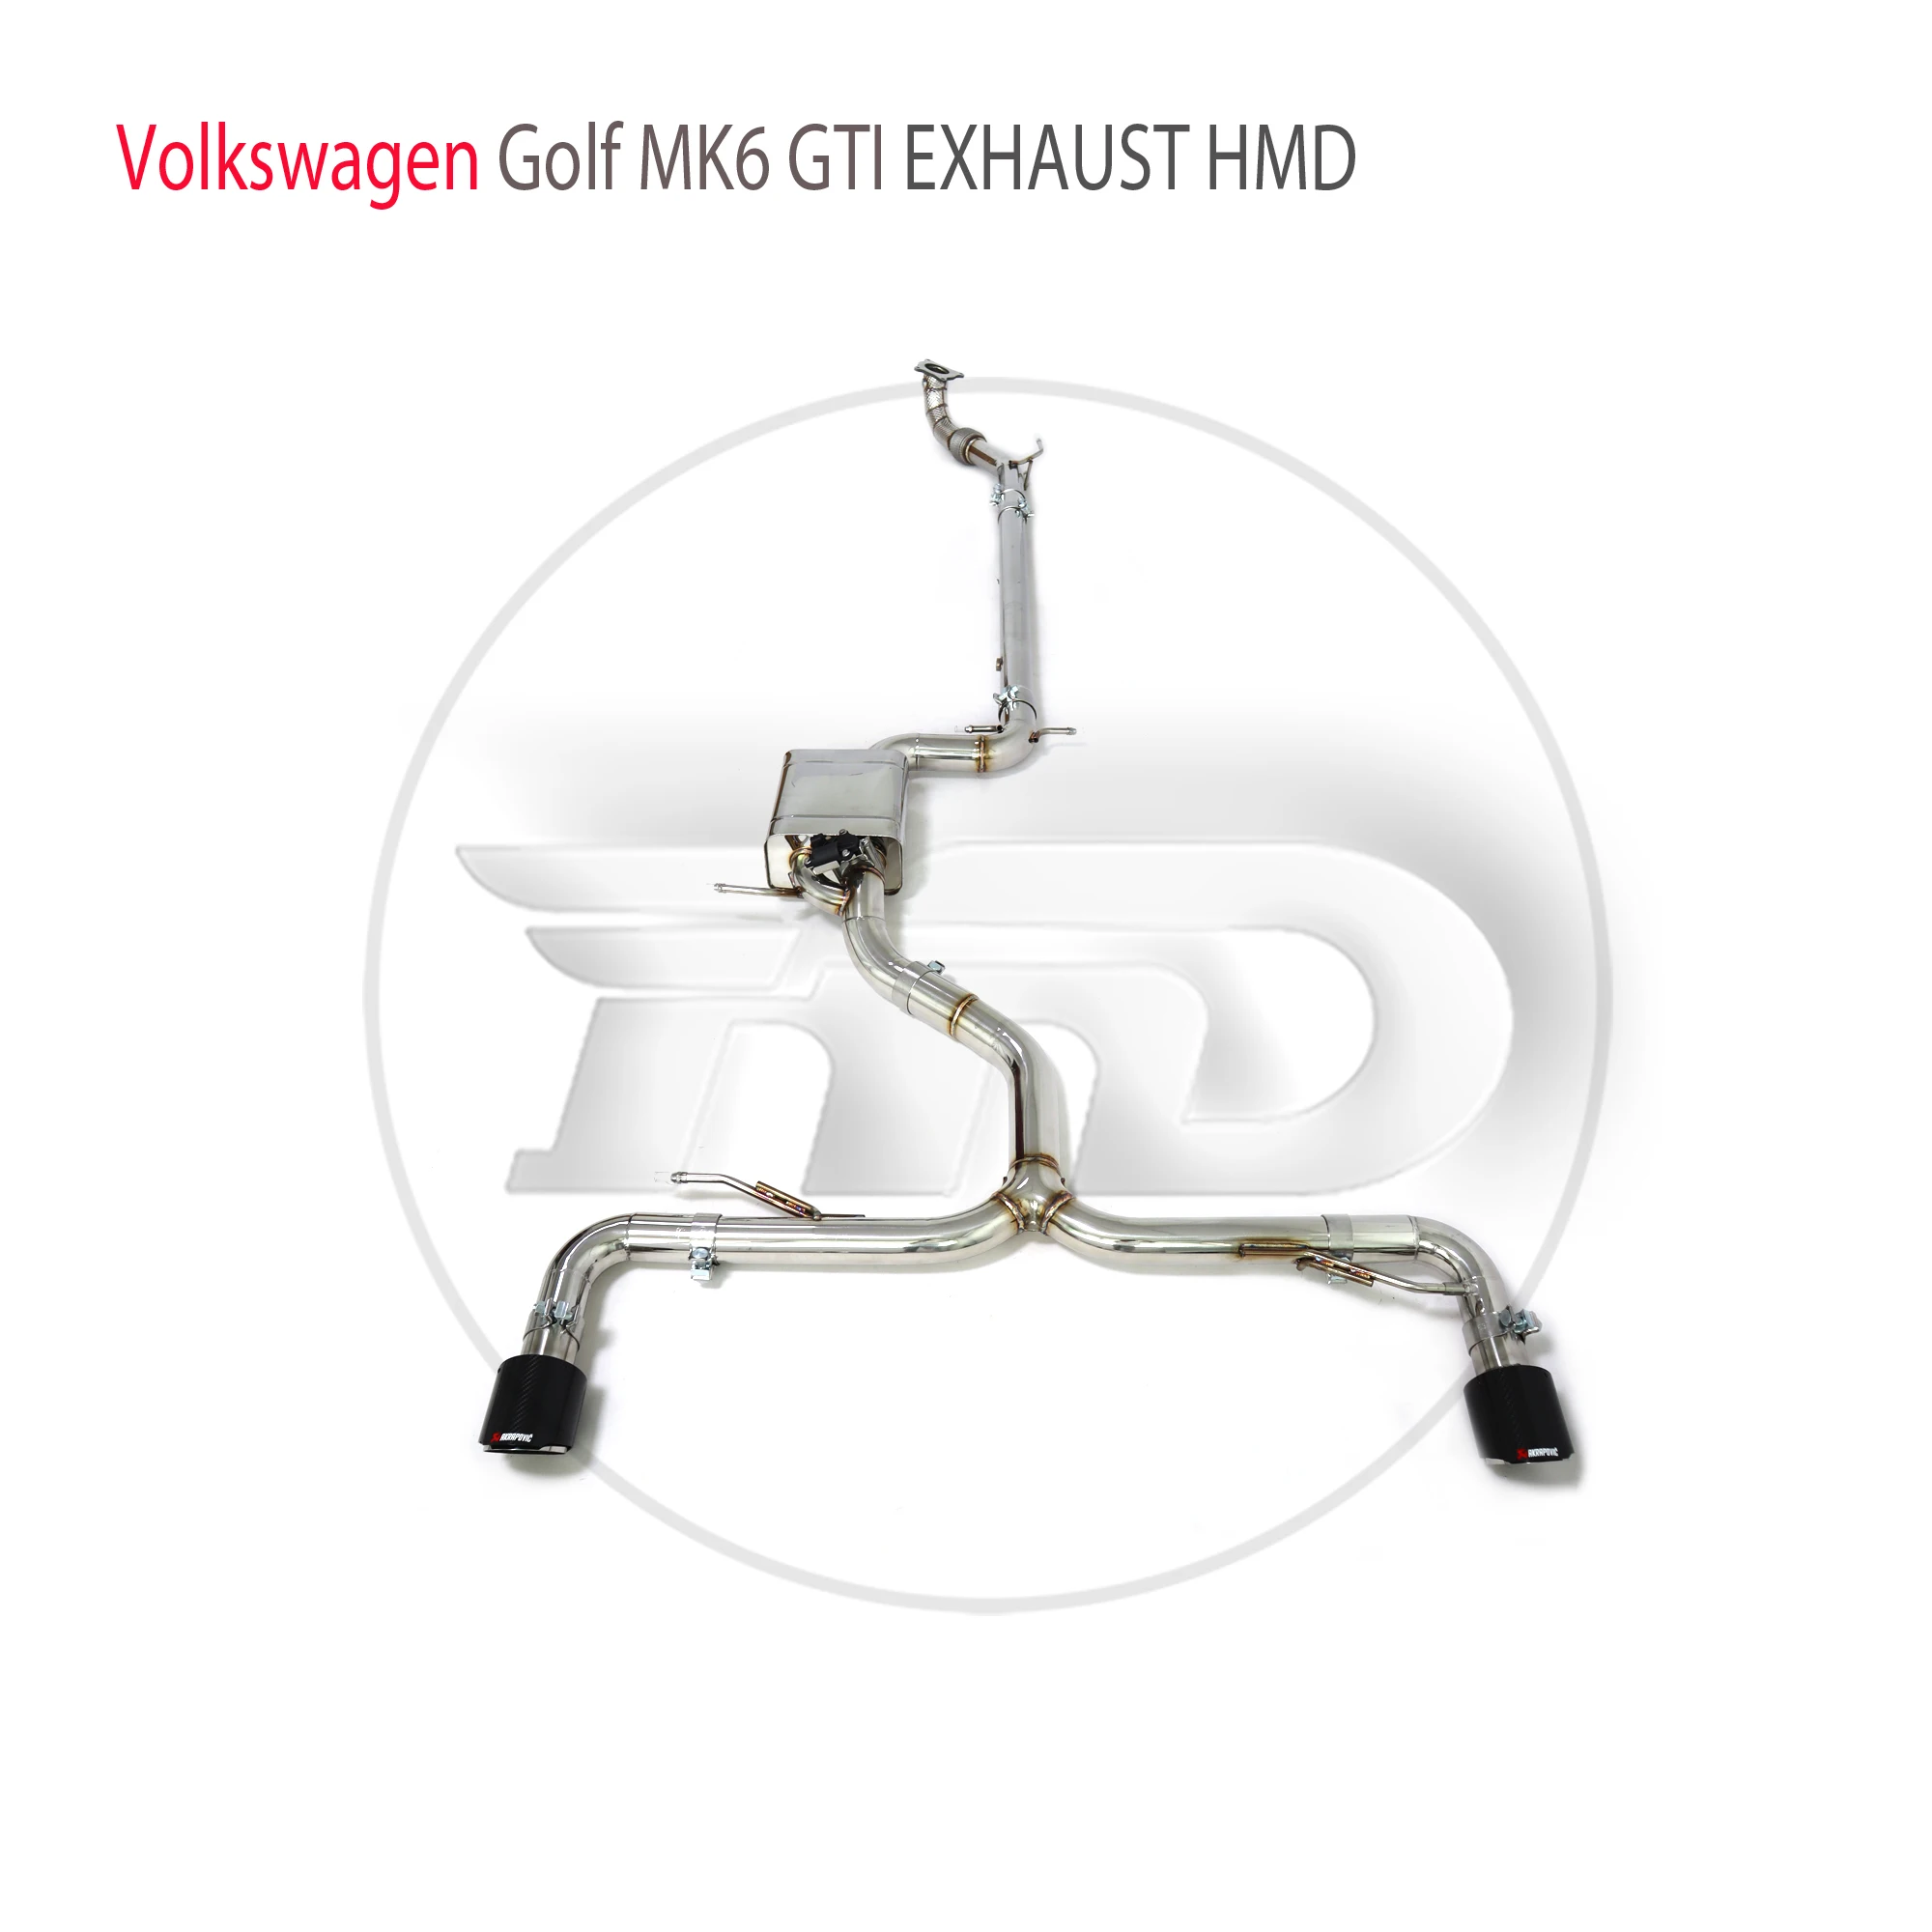 

Выхлопная система HMD из нержавеющей стали для Volkswagen Golf MK6 GTI 2,0 TFSI 2008-2013